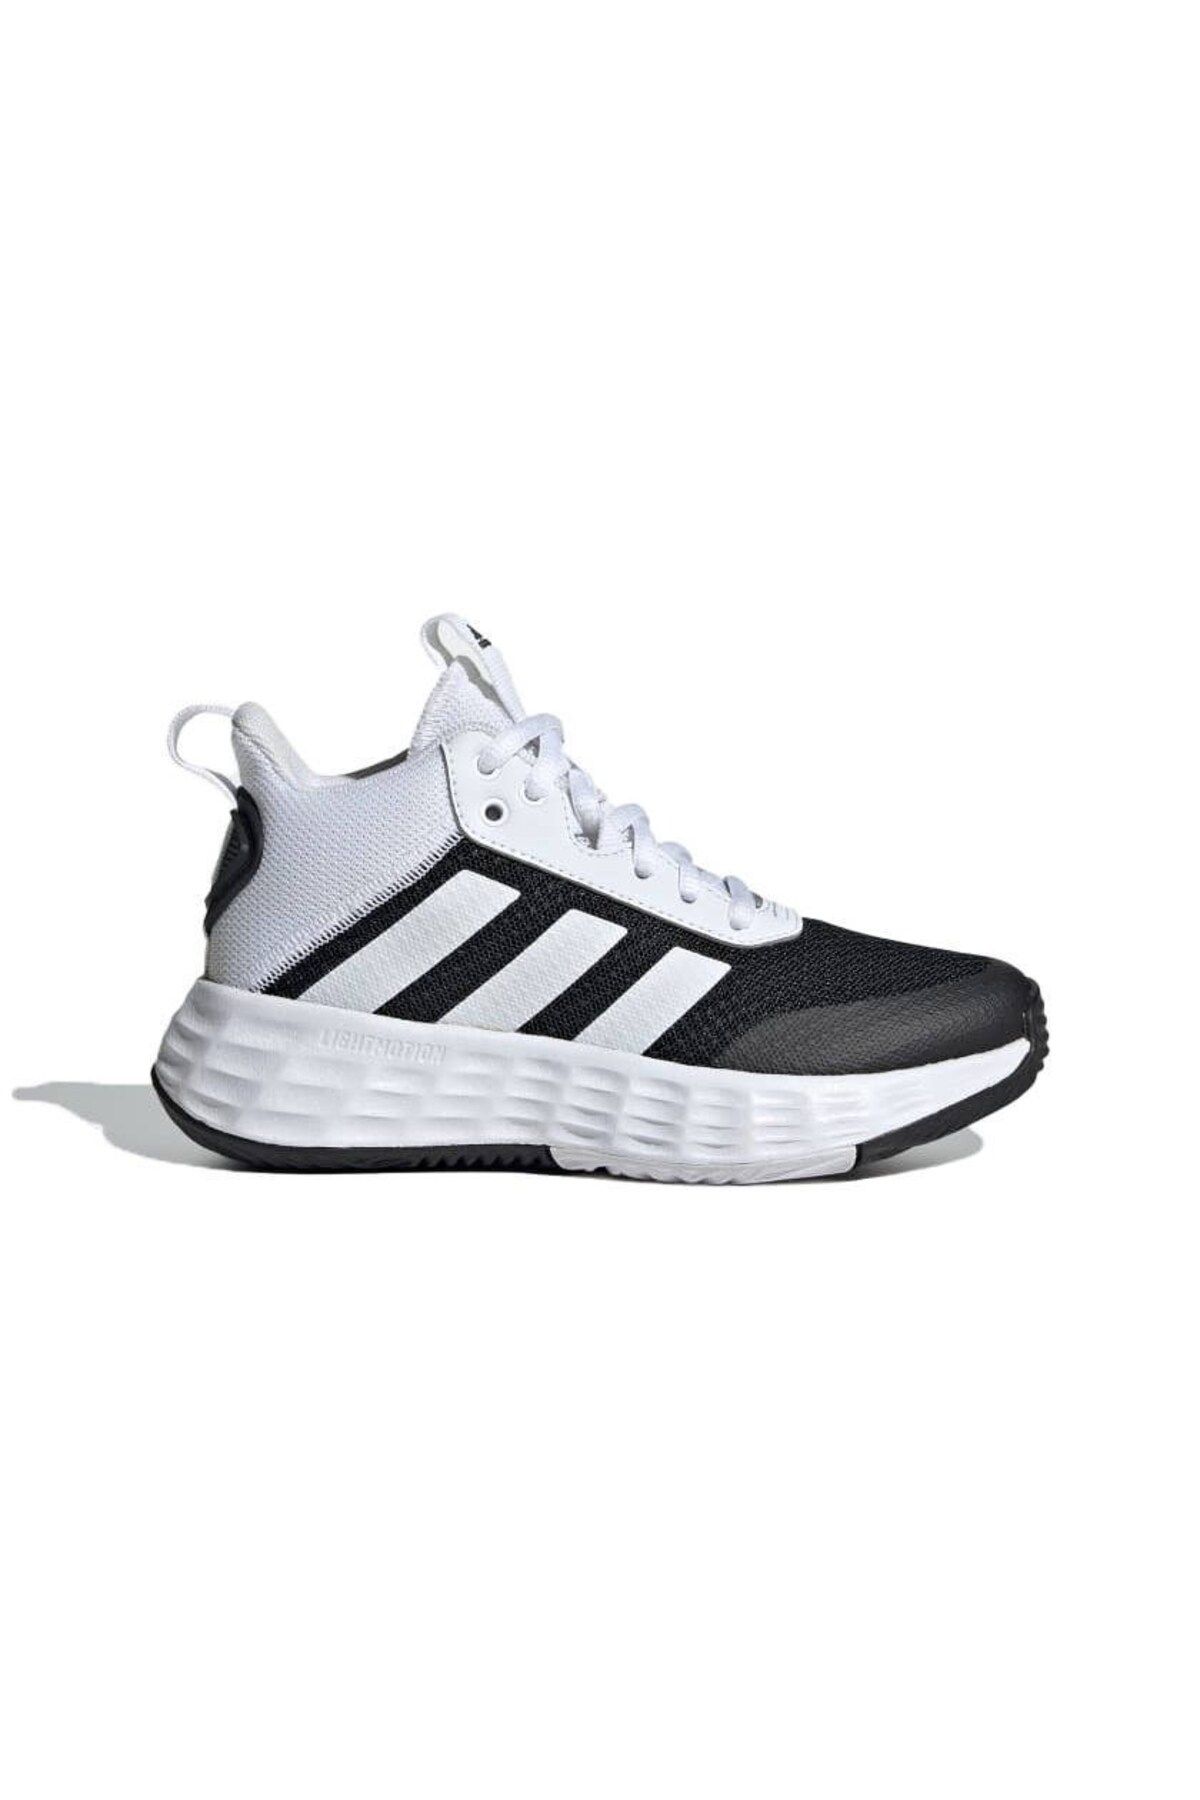 adidas Ownthegame 2.0 K Çocuk Siyah Bilekli Basketbol Ayakkabısı